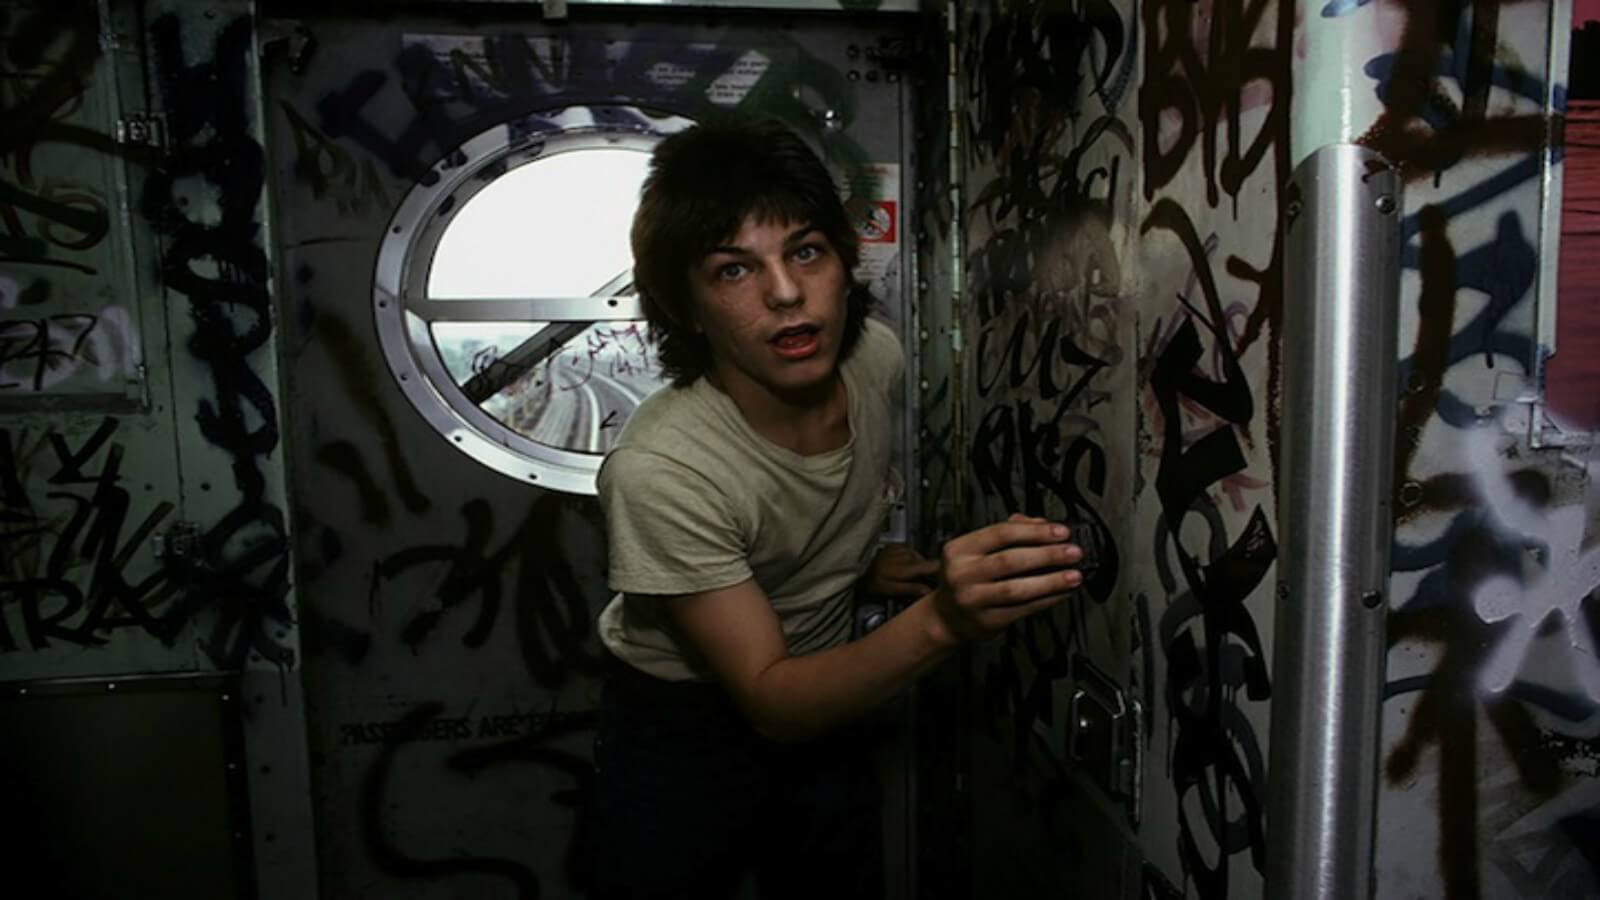 The Rise of Graffiti: serie documental sobre la historia del graffiti